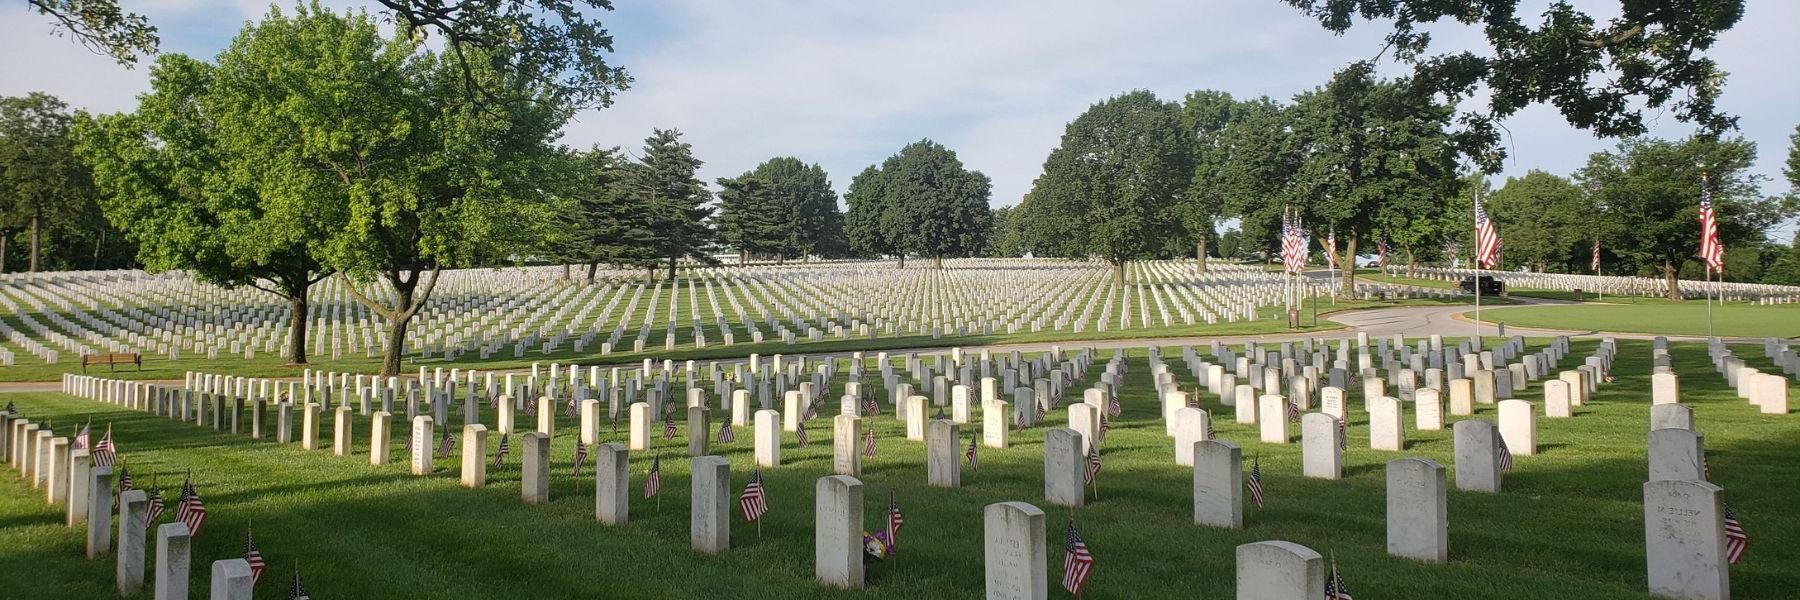 杰斐逊兵营国家公墓保存着2022世界杯投注斯在《美国梦》中扮演的迷人角色.S. military history.